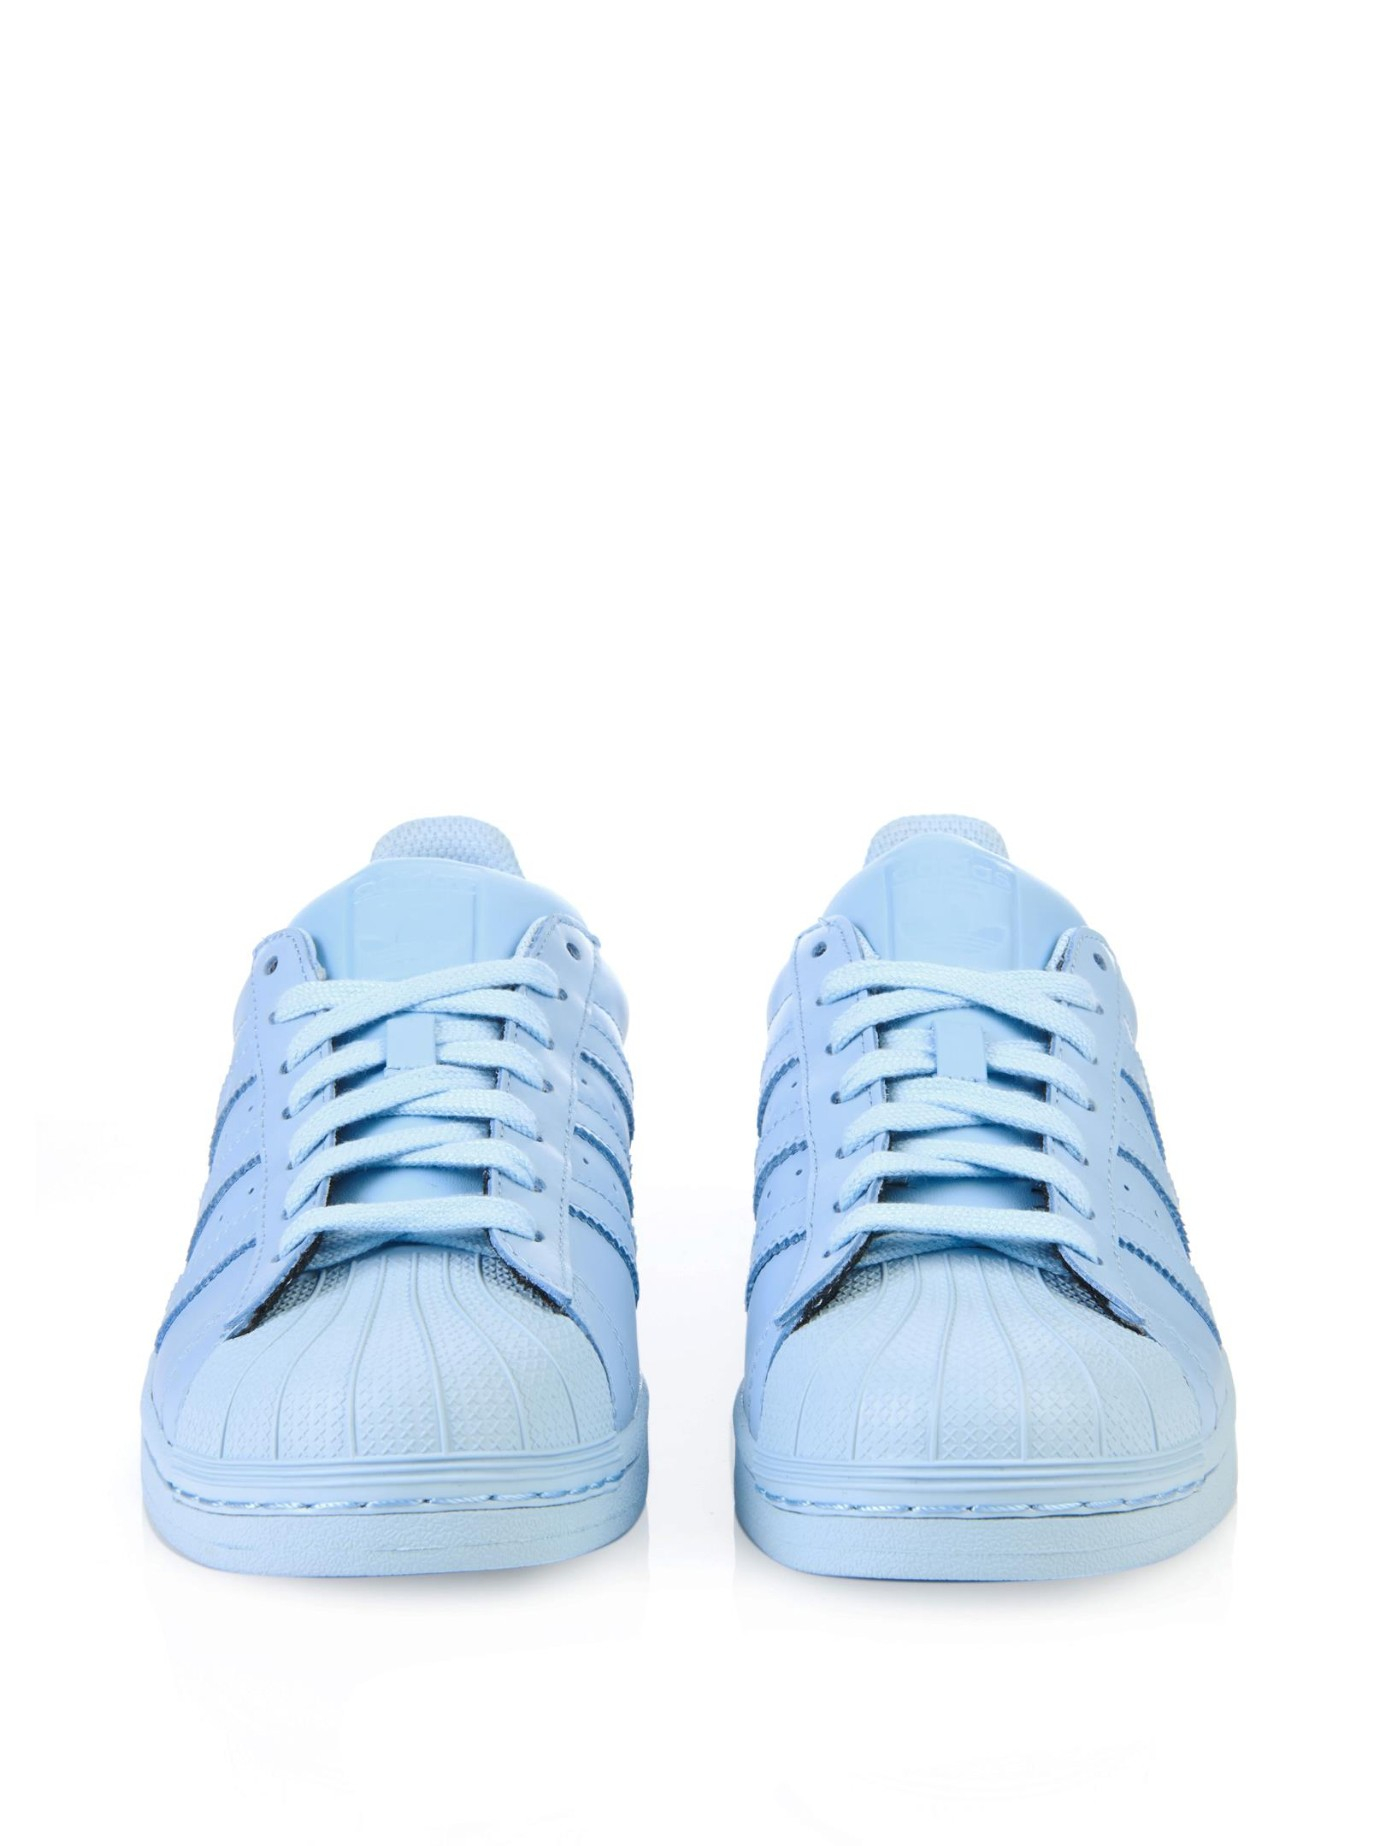 light blue adidas originals